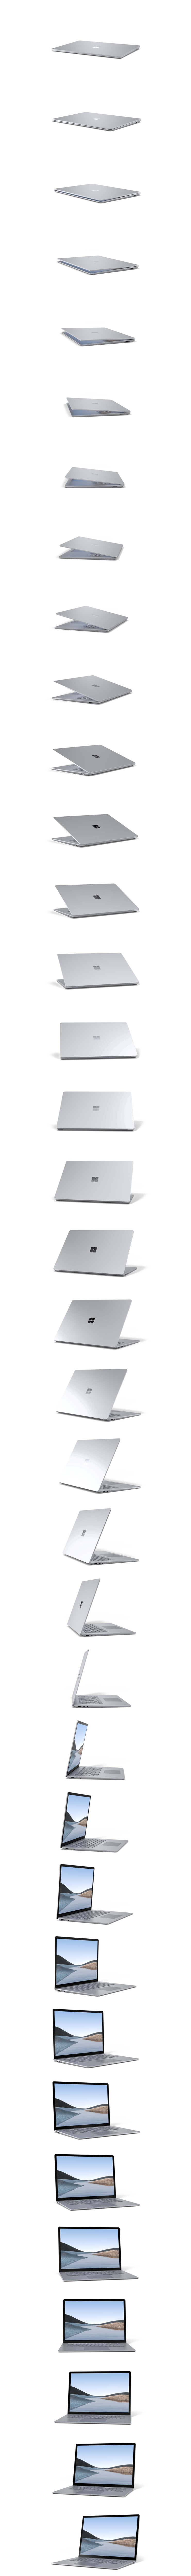 Surface Laptop 3 หมุน 360 องศา